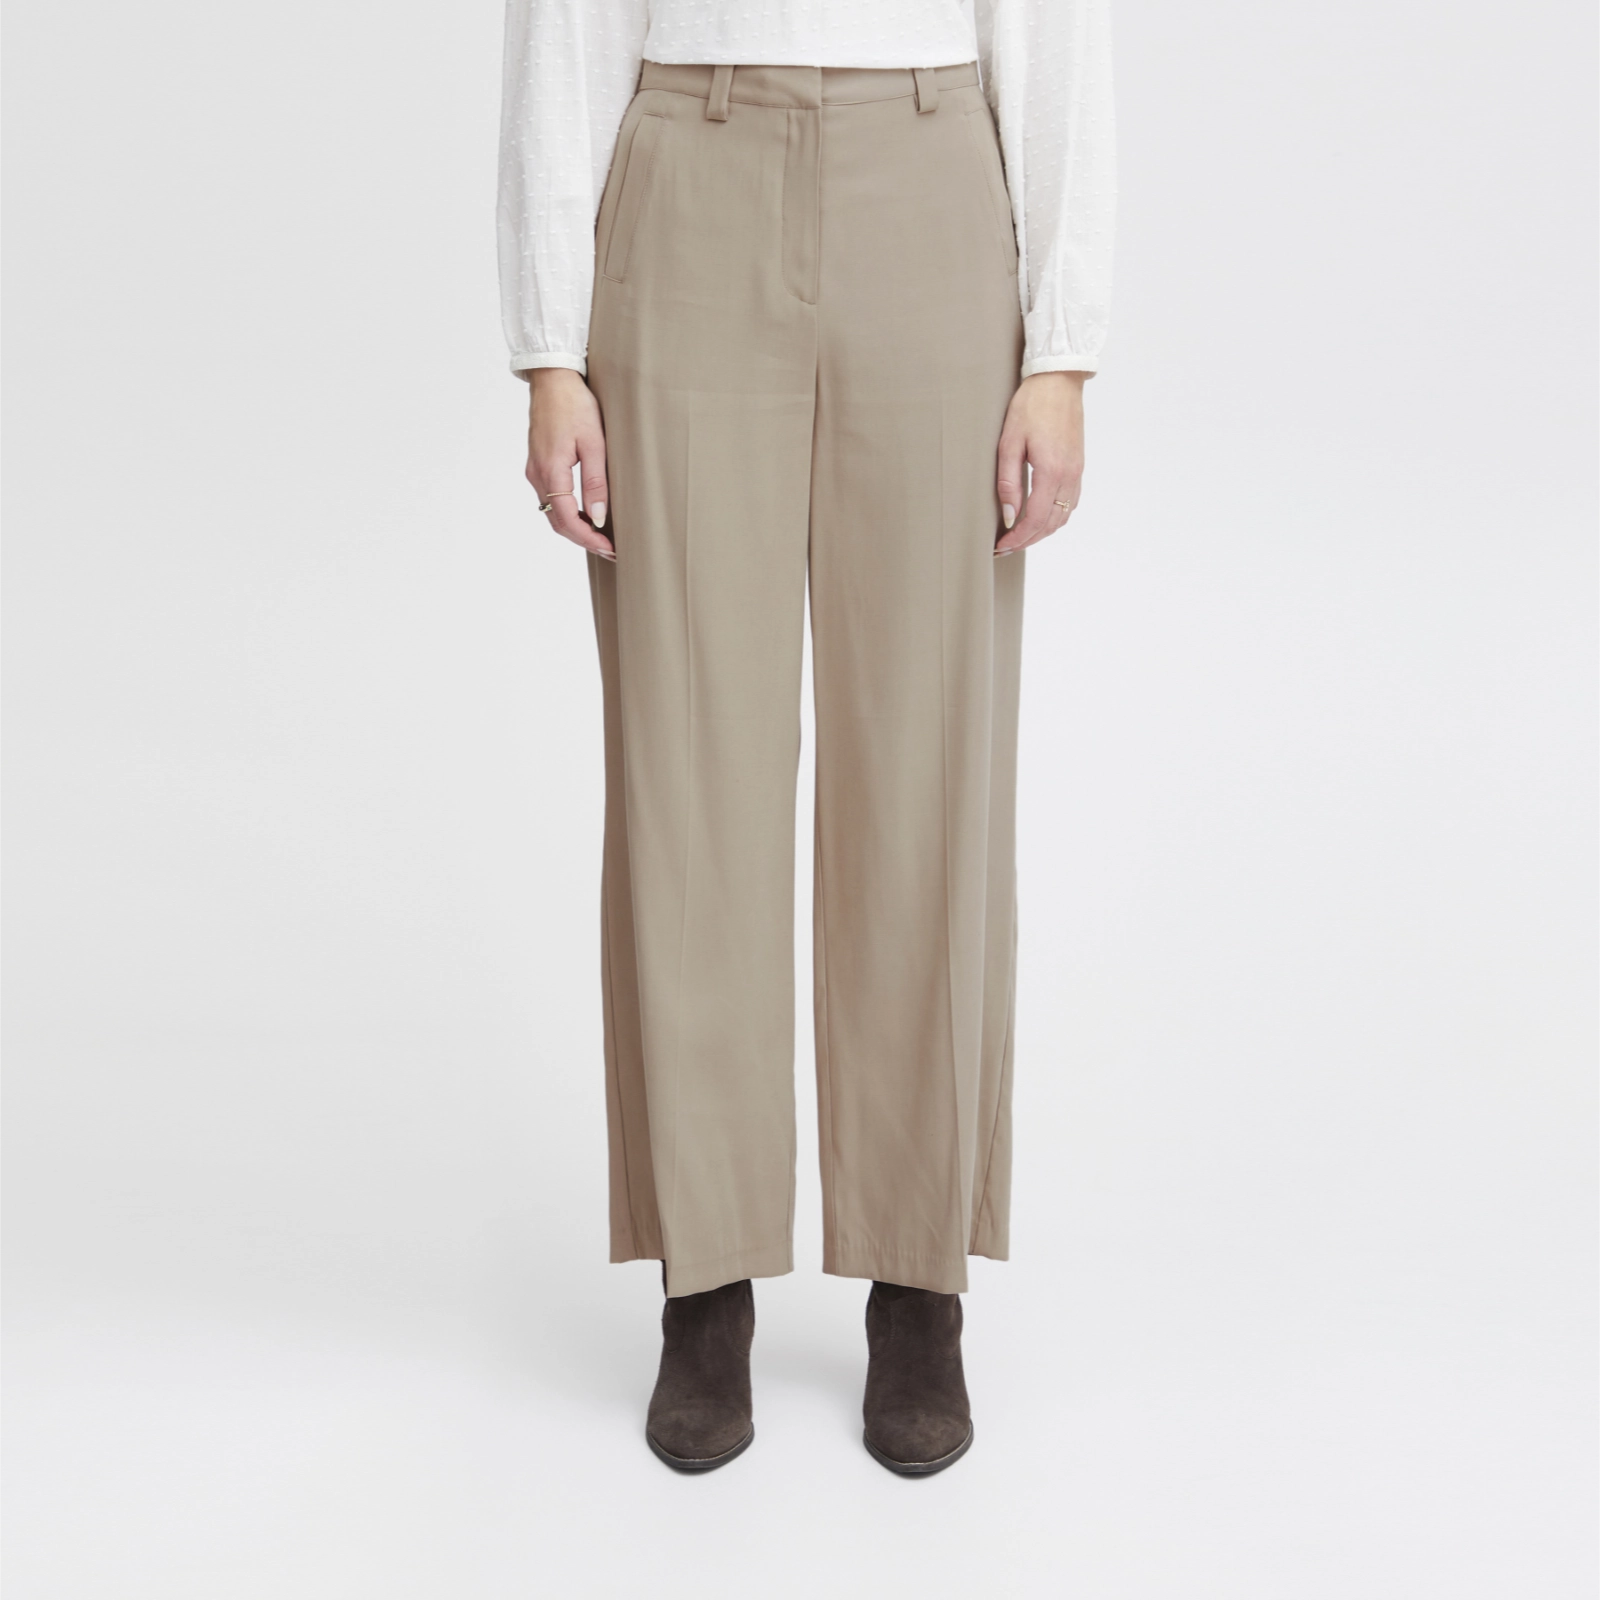 Irleono bukser fra Atelier Reve i Cobblestone (model)